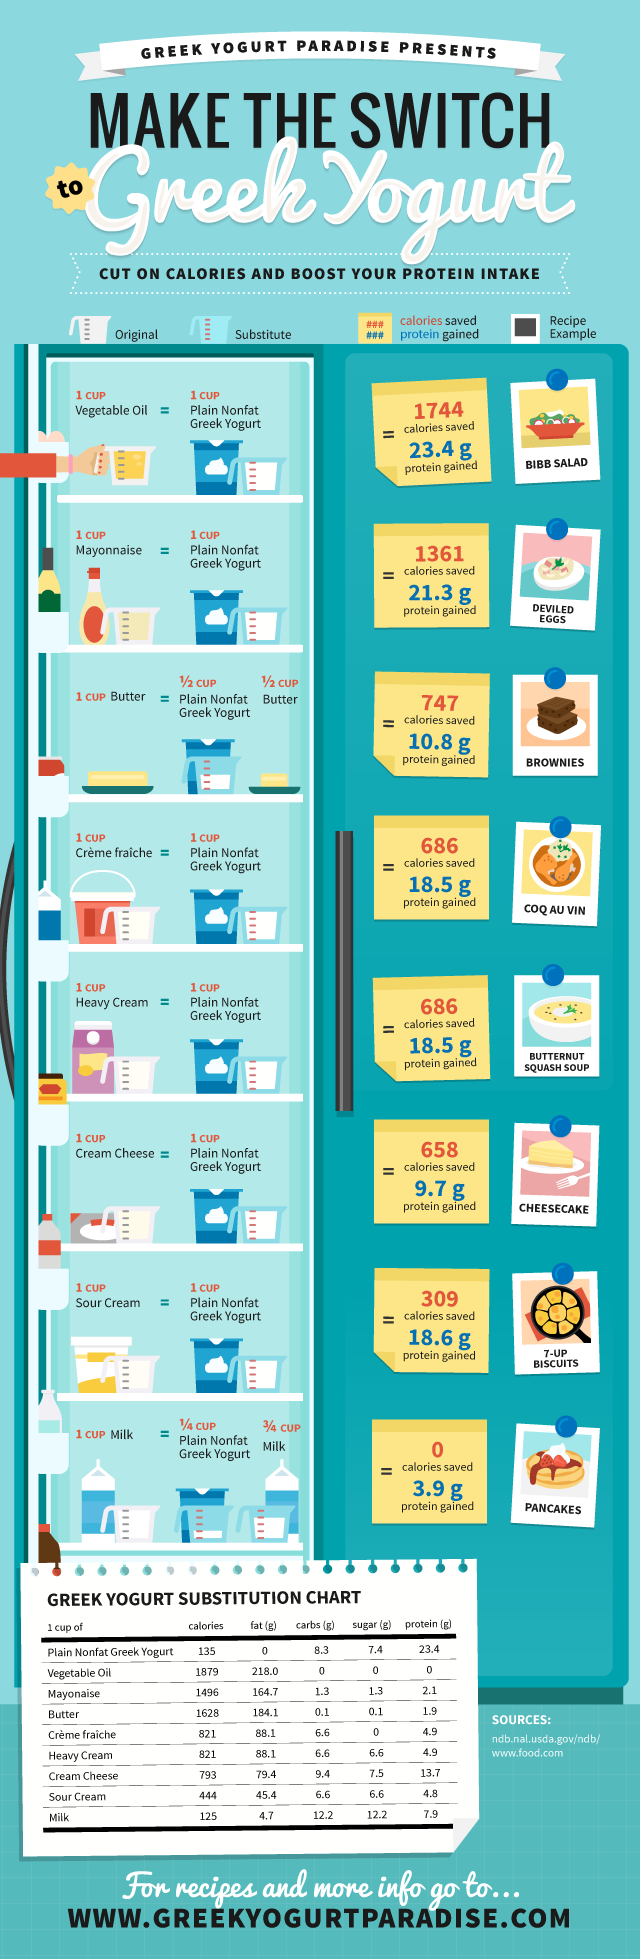 greek-yogurt-substitute-diet-plan1-infographic